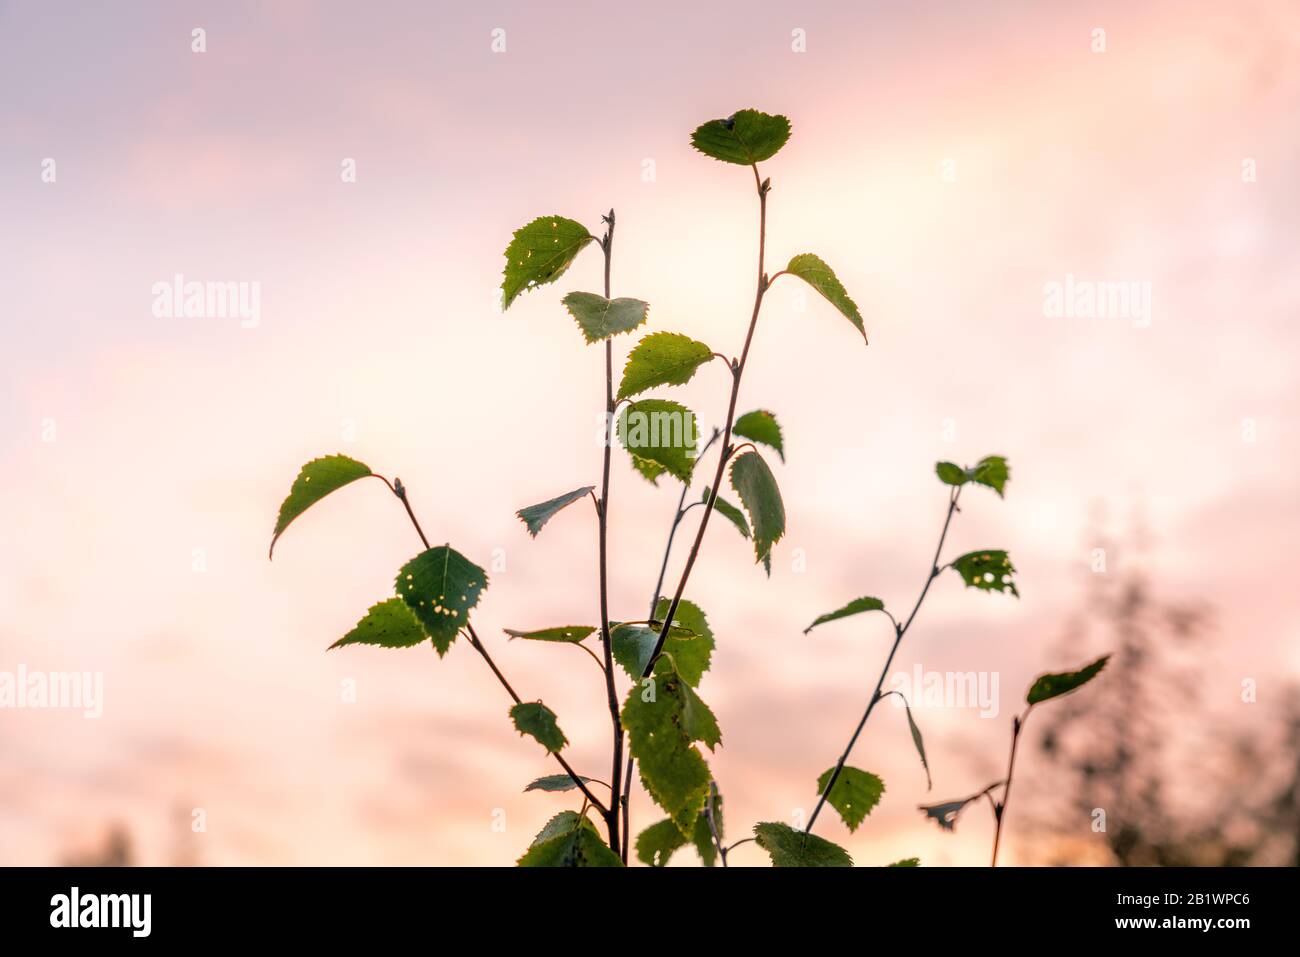 Solo ramo di giovane betulla con poche foglie verdi al tramonto sfuocato sci accanto ad esso. La luce del sole della rosa dà il senso di estate calma pacifica dell'autunno Foto Stock